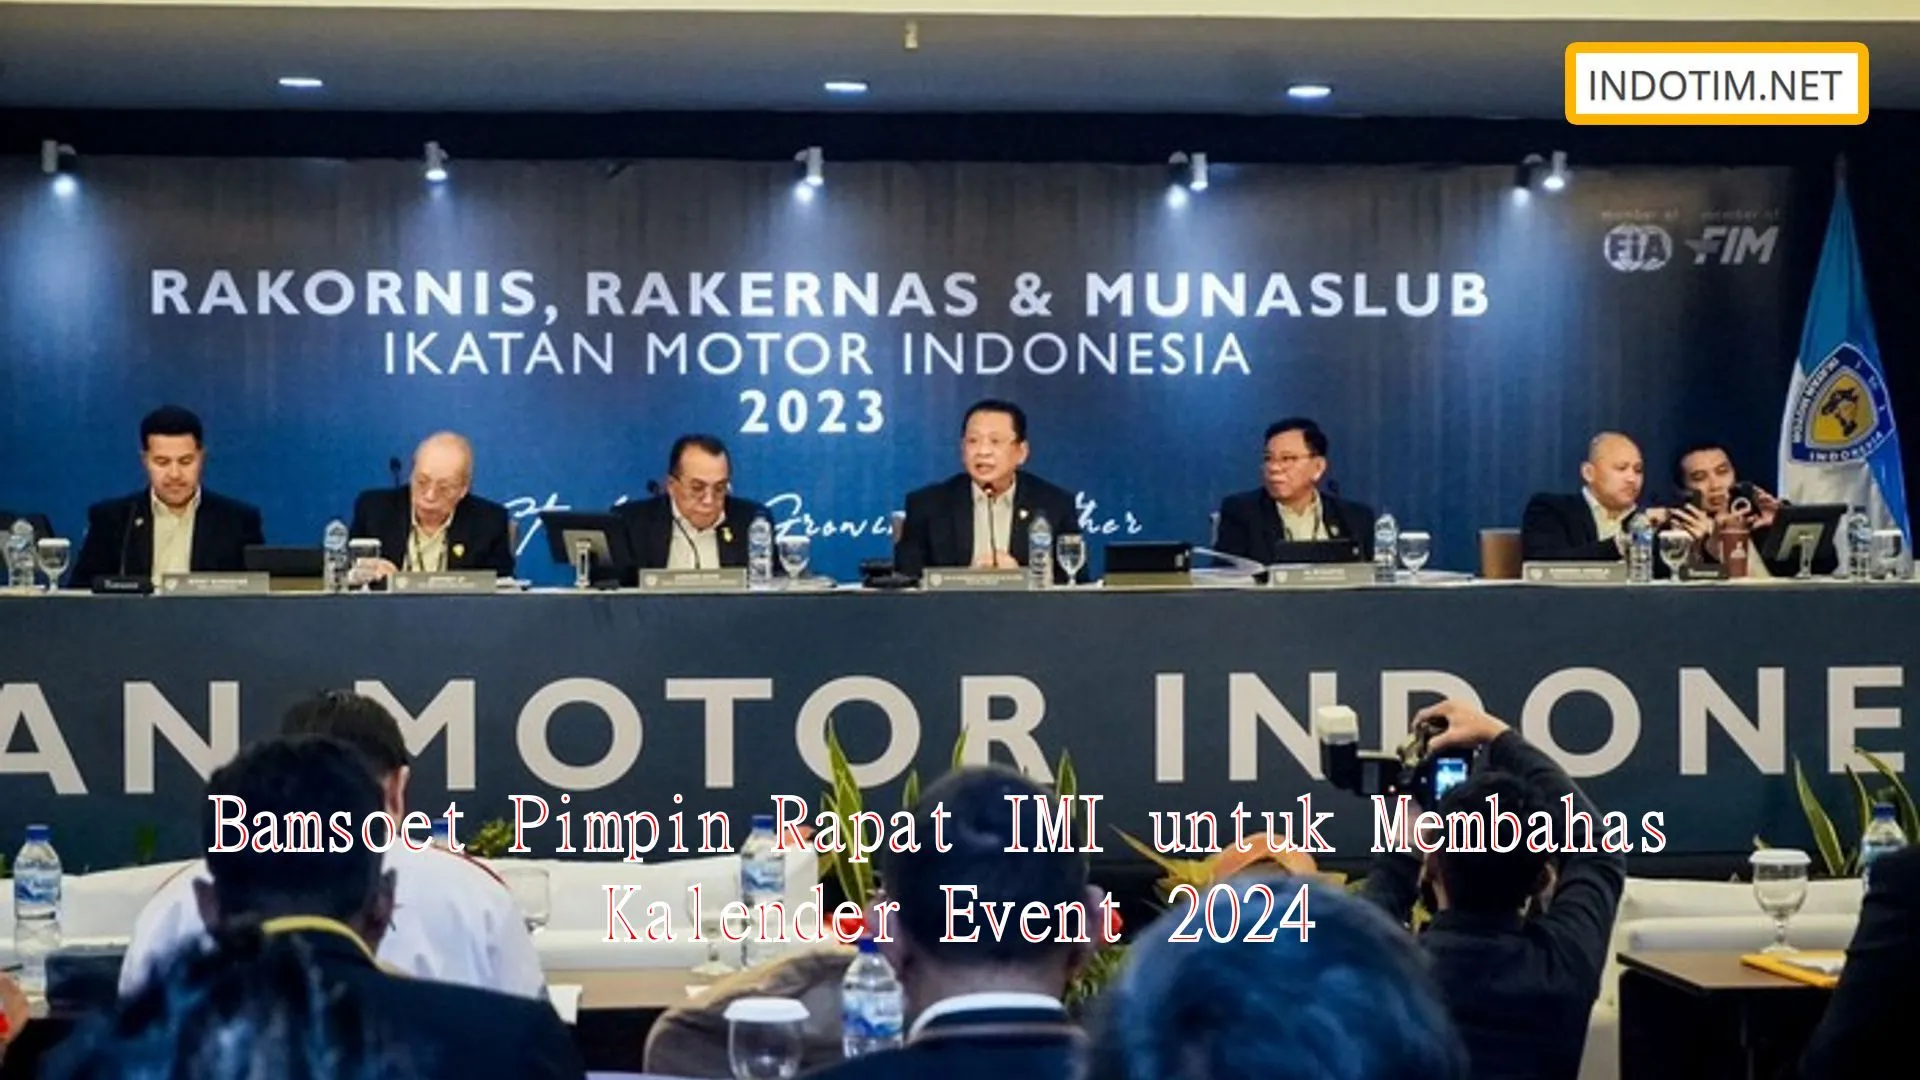 Bamsoet Pimpin Rapat IMI untuk Membahas Kalender Event 2024